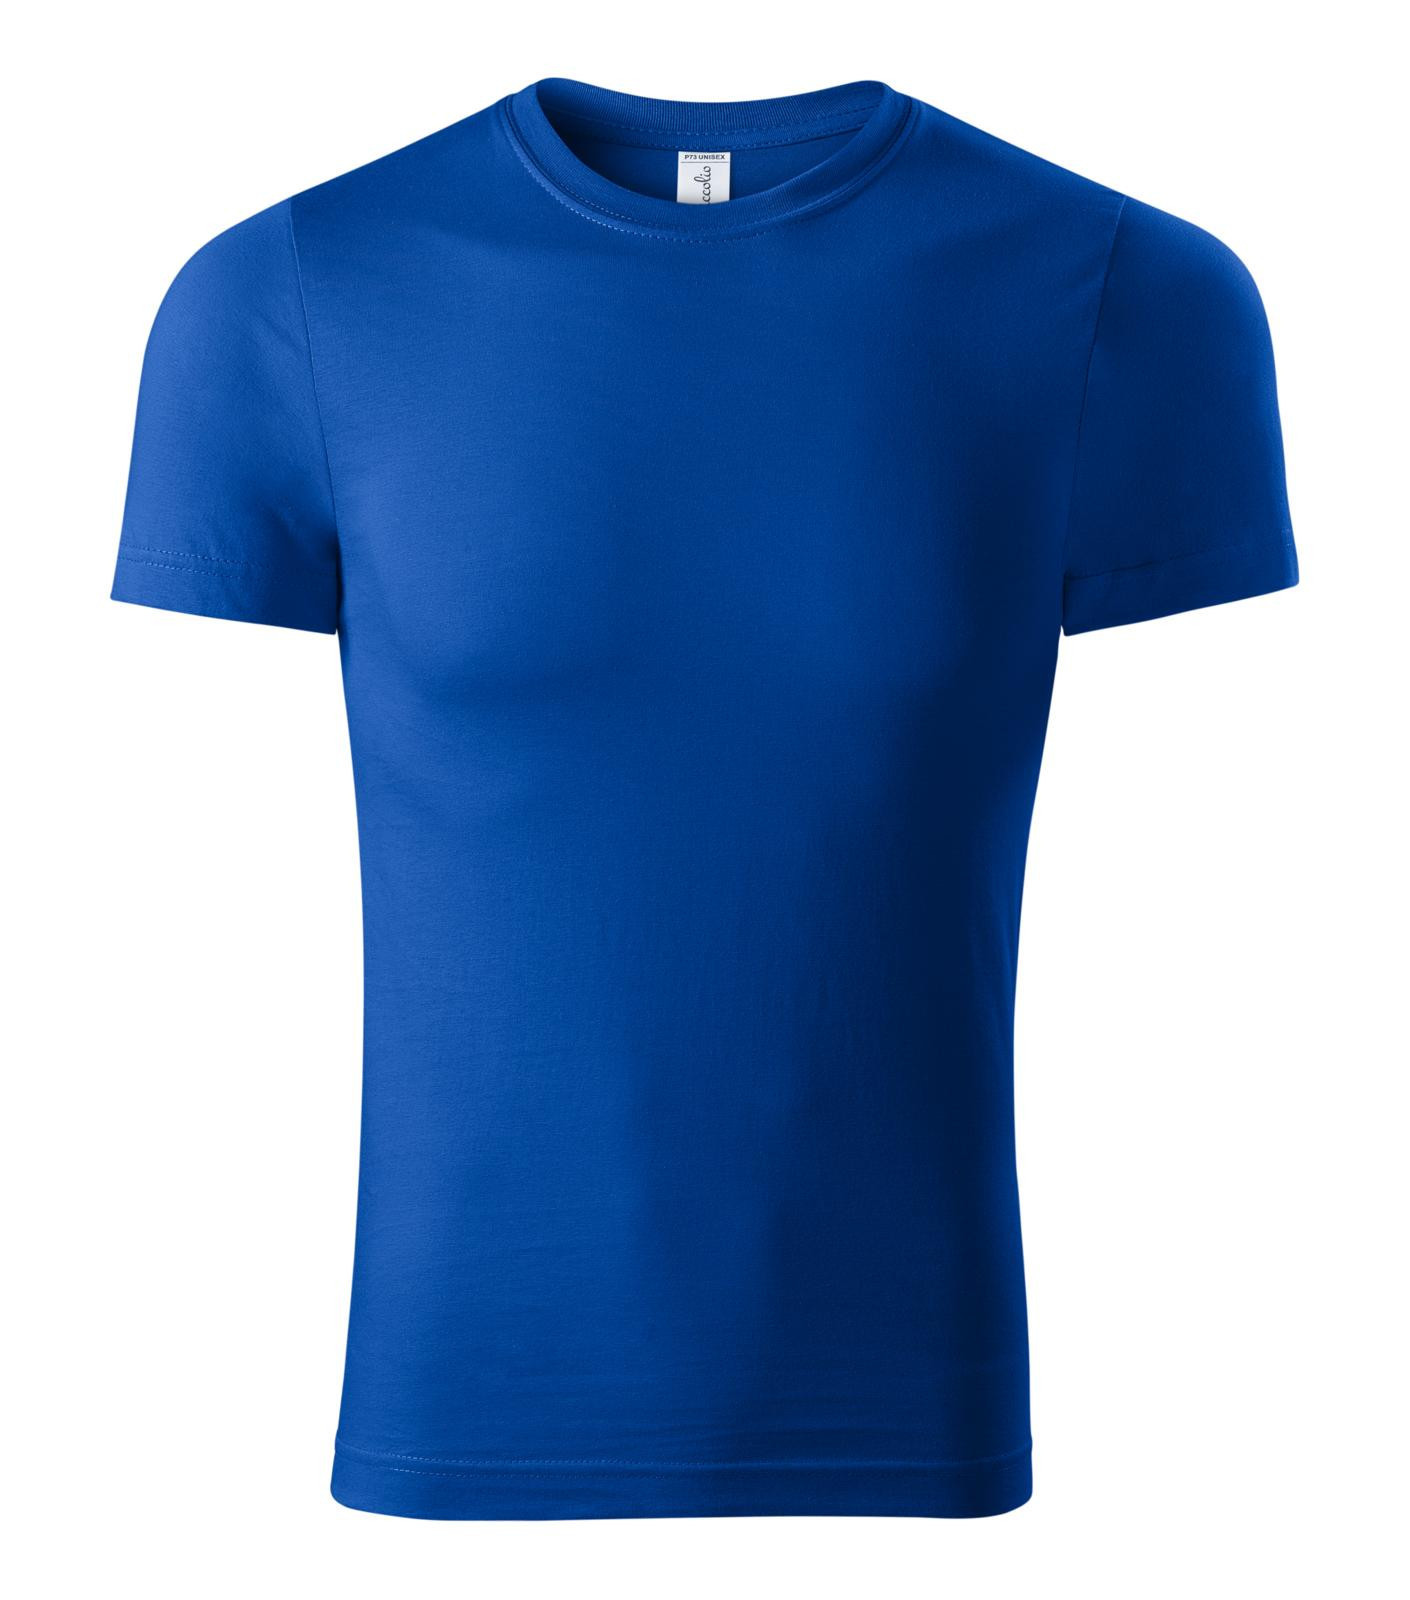 Unisex tričko Piccolio Paint P73 - veľkosť: XXL, farba: kráľovská modrá